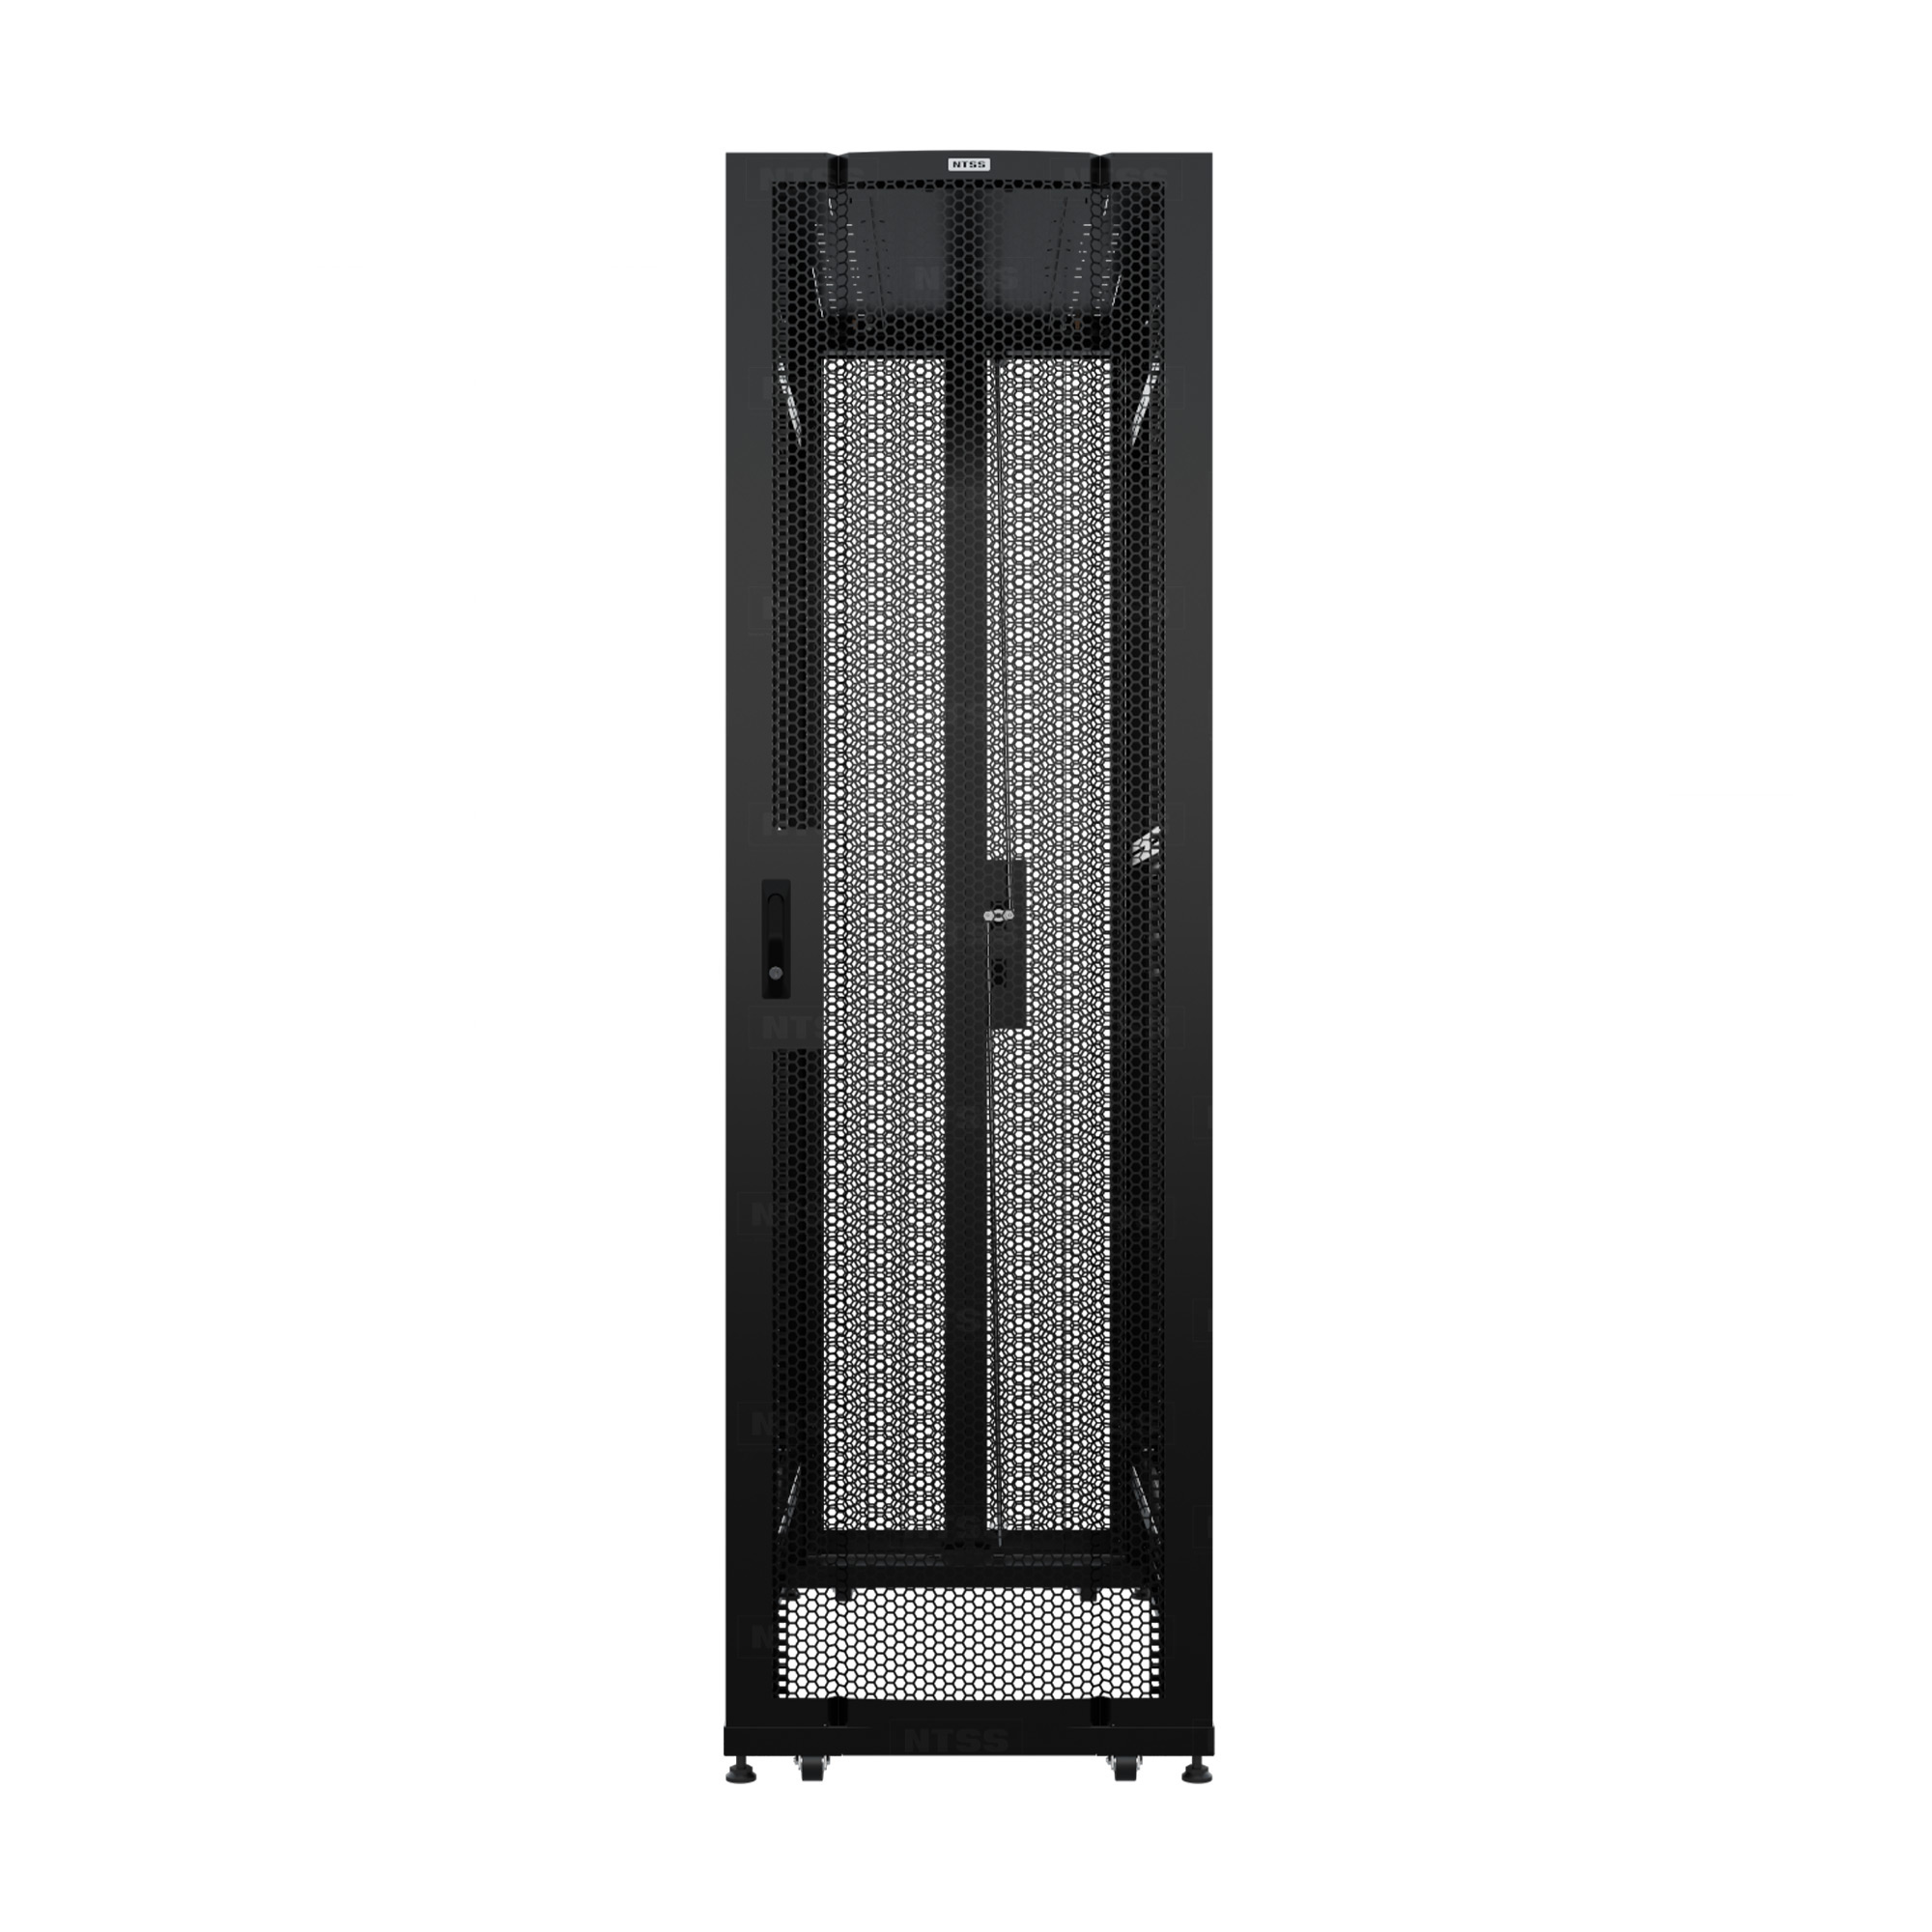 Шкаф серверный напольный 48U 600x1200 мм, перфорация/металл, черный, NTSS ПРОЦОД DS (NTSS-DS48-60120)